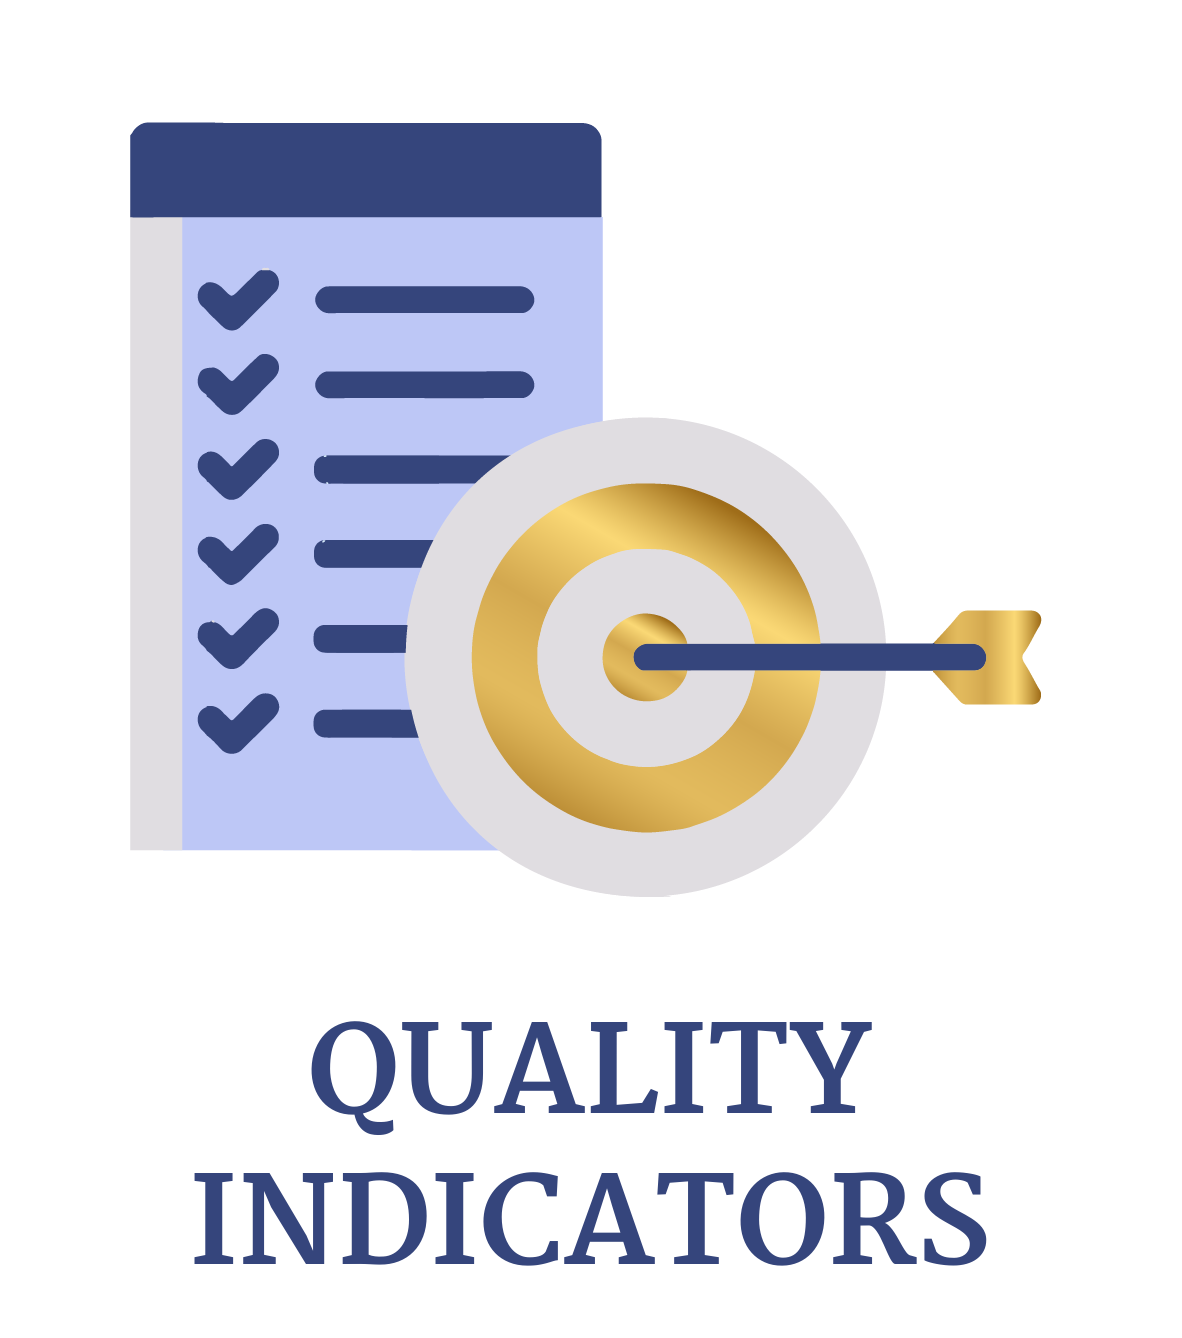 Quality indicators